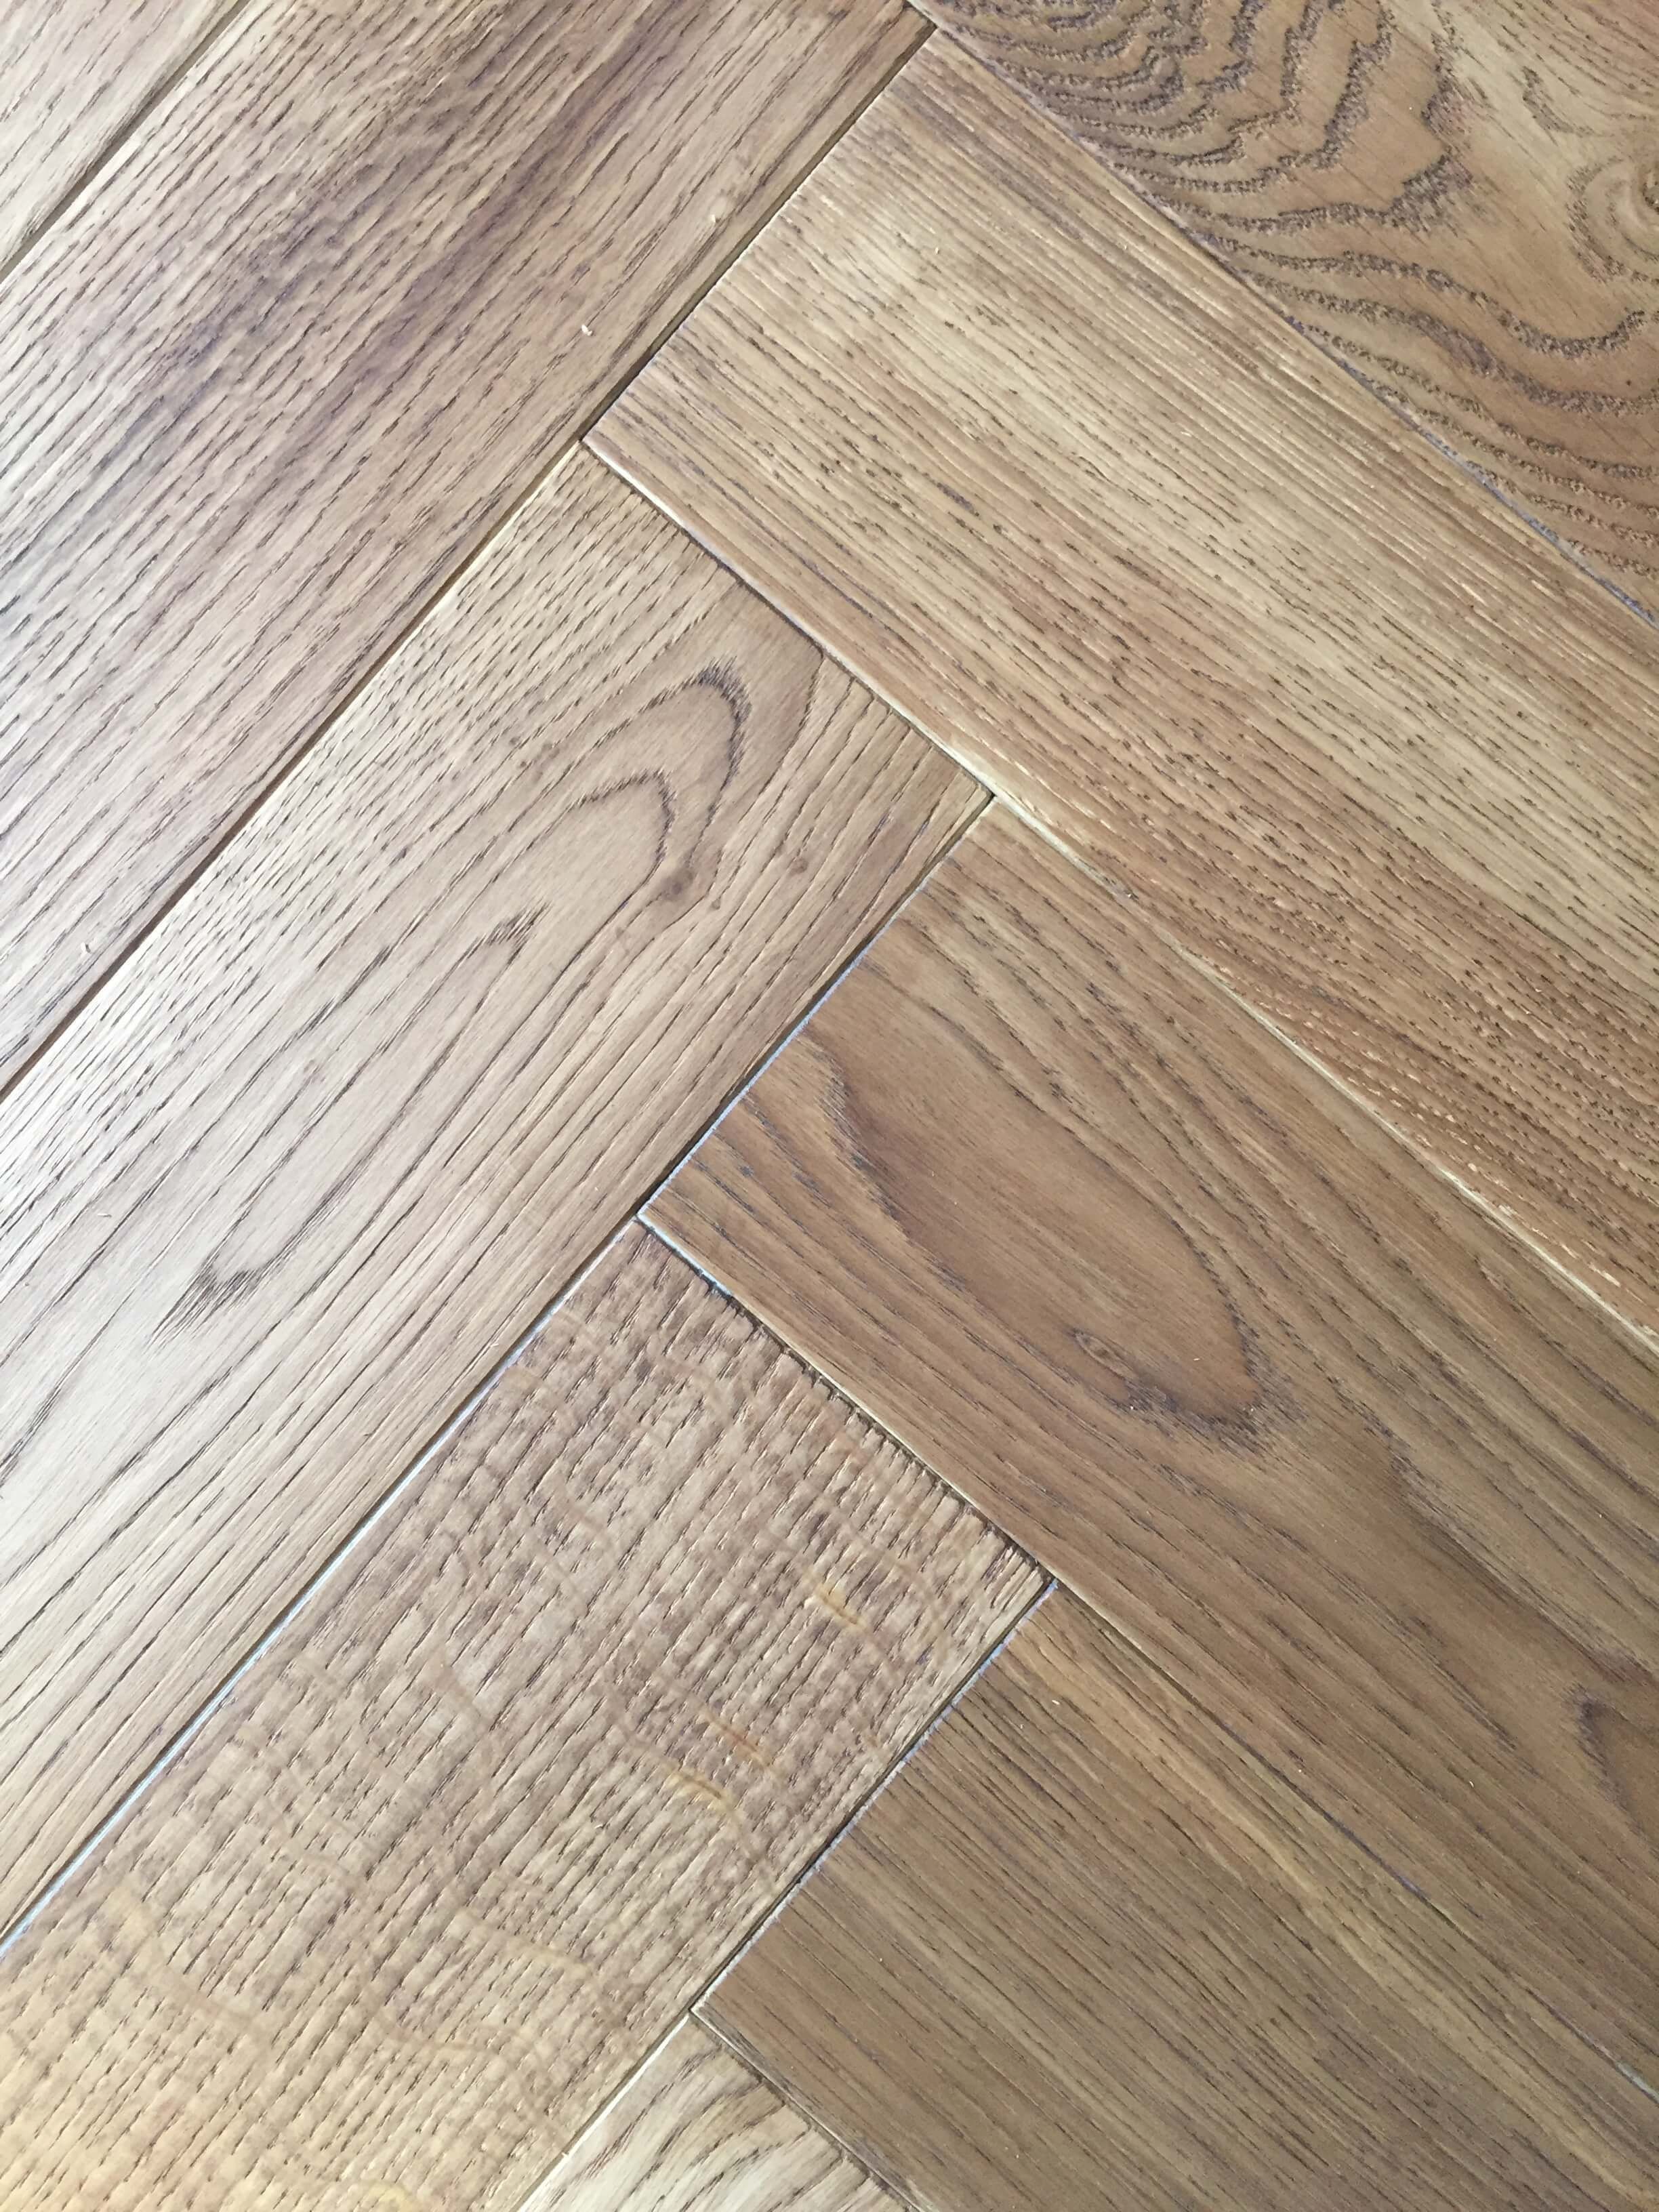 14 attractive Hardwood Floor Pattern Names 2024 free download hardwood floor pattern names of light wood tile floors floor plan ideas with 40 light oak engineered hardwood flooring ideas